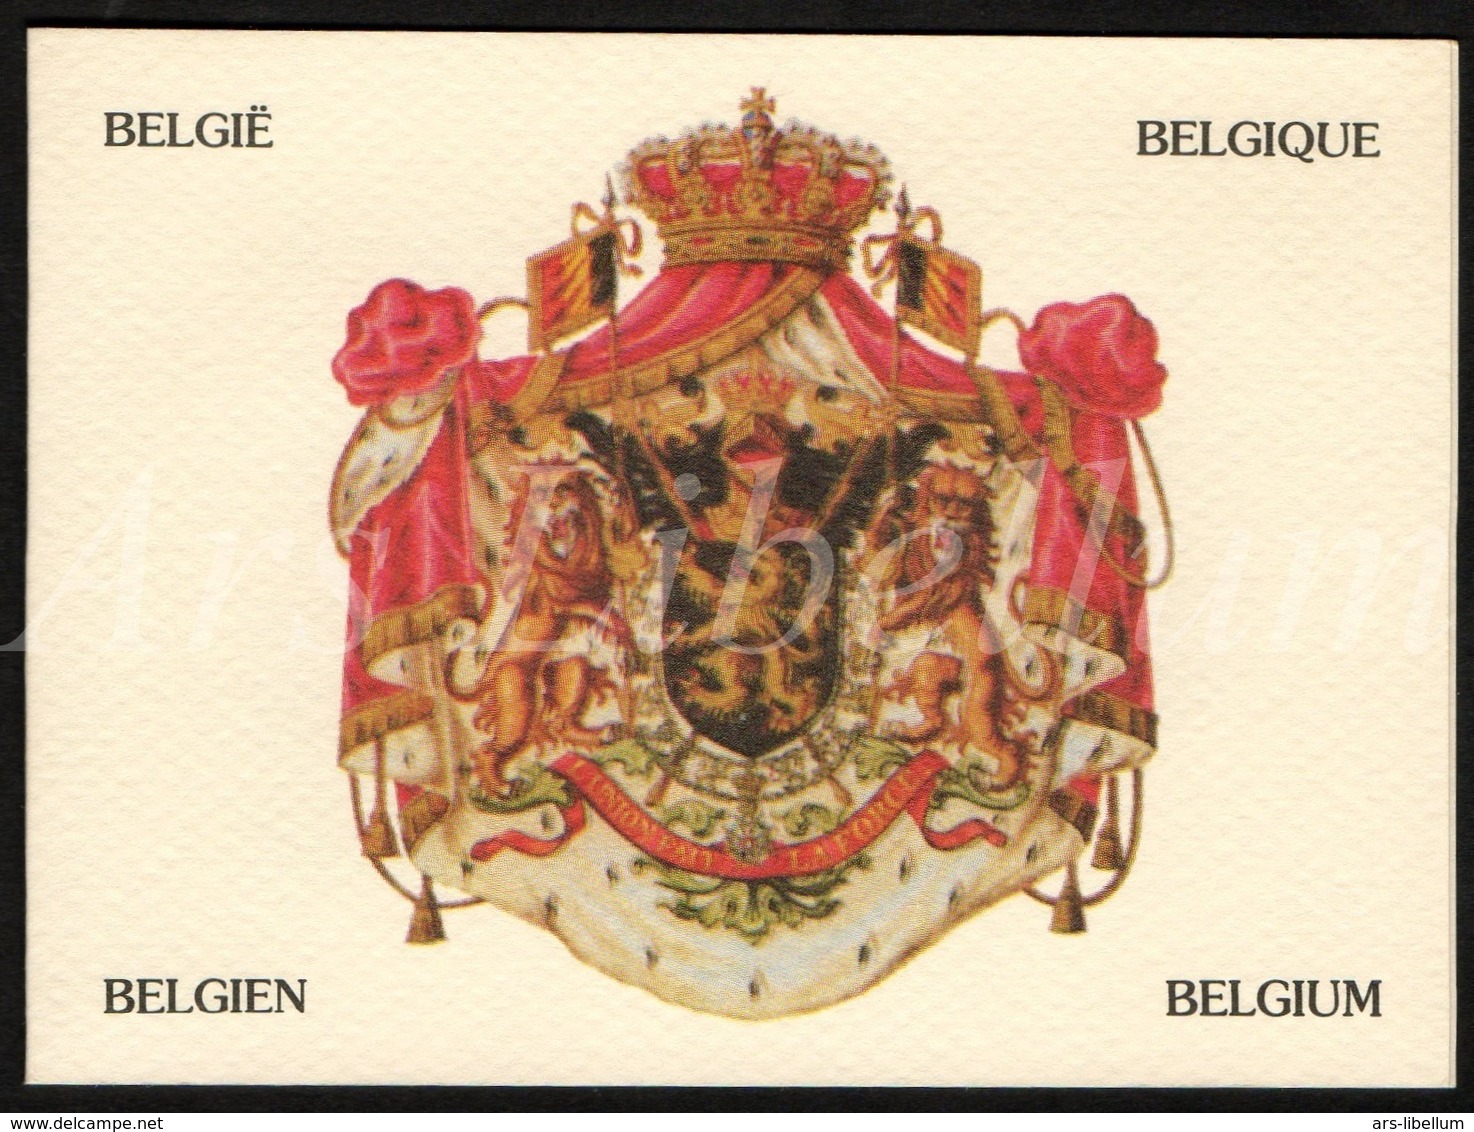 ROYALTY / Belgique / België / Famille Royale / Dynastie Belge / Koningshuis / Telefoonkaart / Belgacom / Telecard - Sans Puce